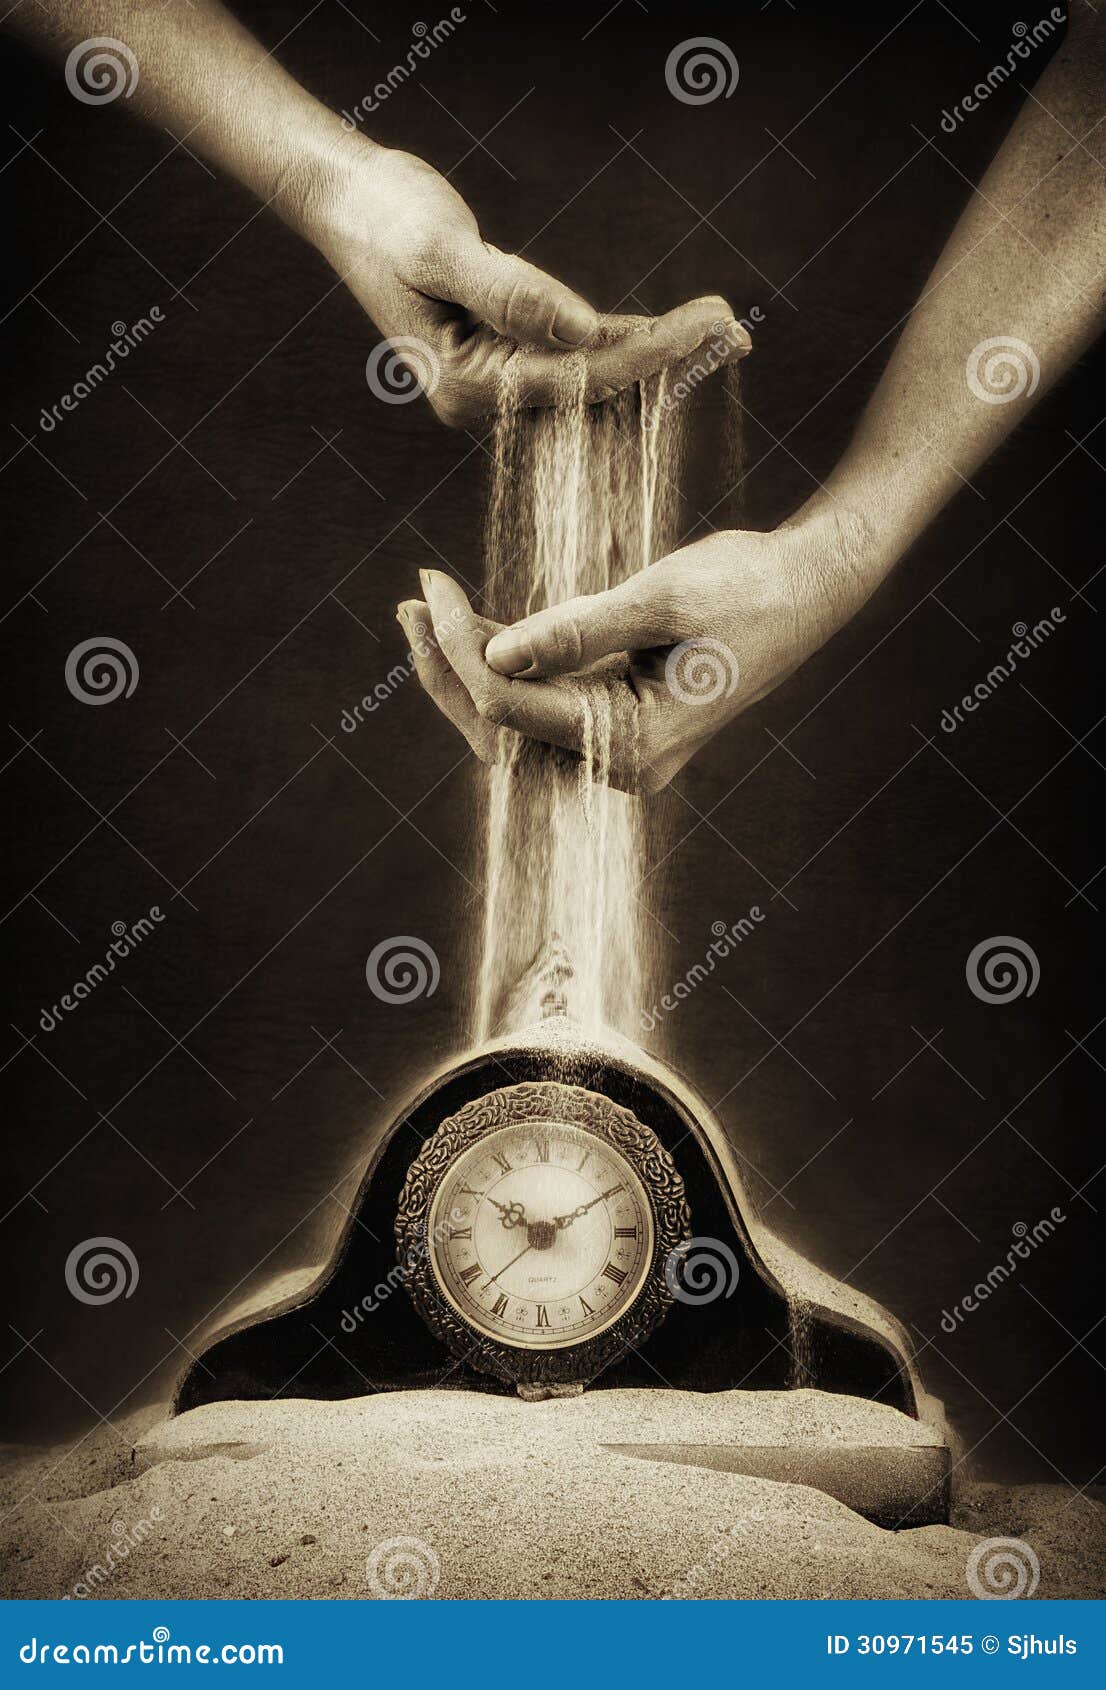 Рука держащая часы. Песочные часы в руках. Человек с песочными часами в руках. Часы на руке. Песочные часы на ладони.